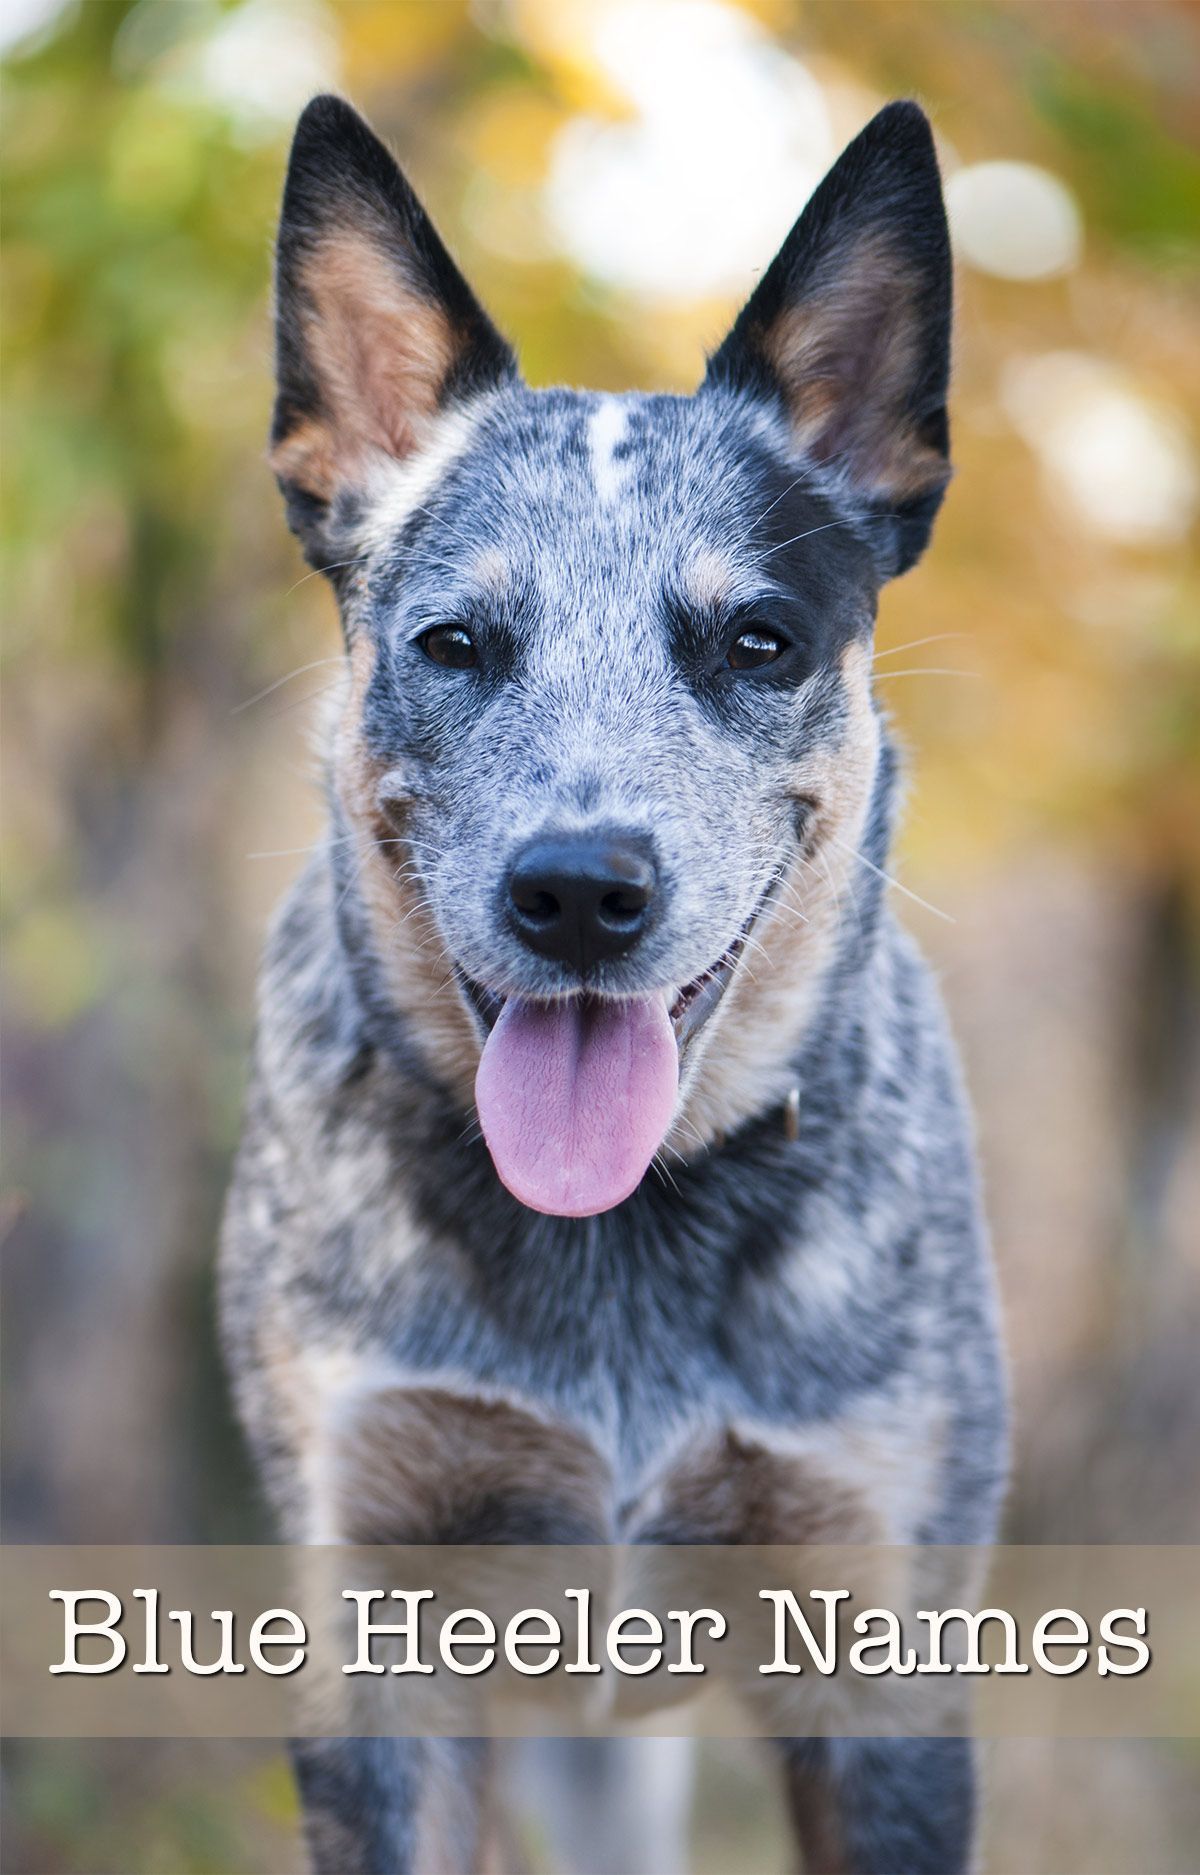 שמות הלר כחולים - 200 רעיונות מבריקים לגורי כלבי בקר אוסטרליים